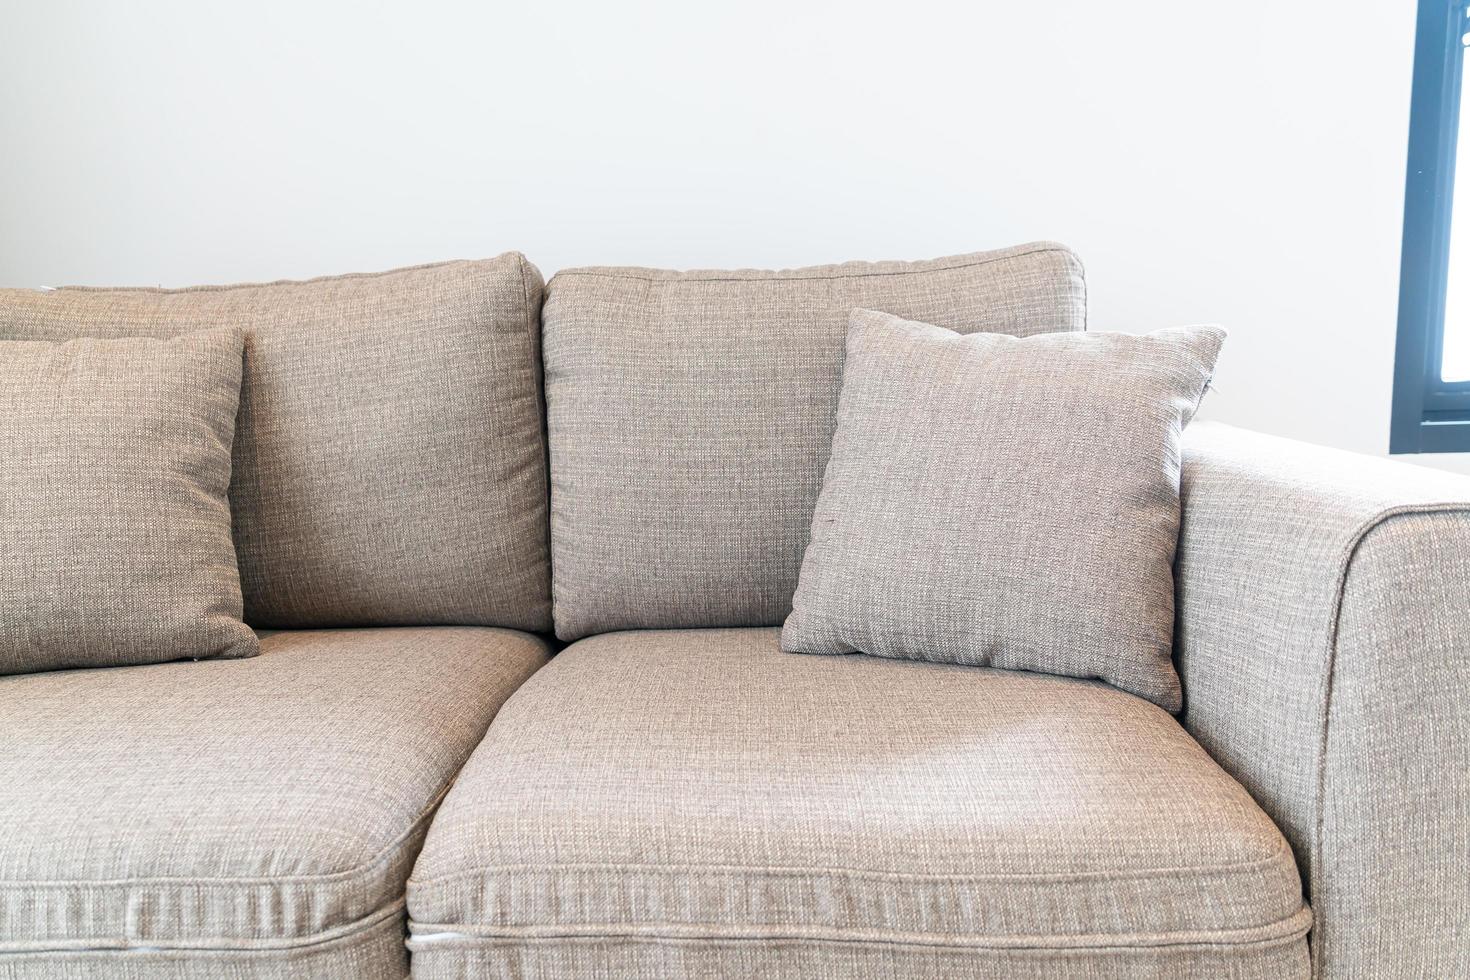 bella decorazione del cuscino sul divano nel soggiorno foto